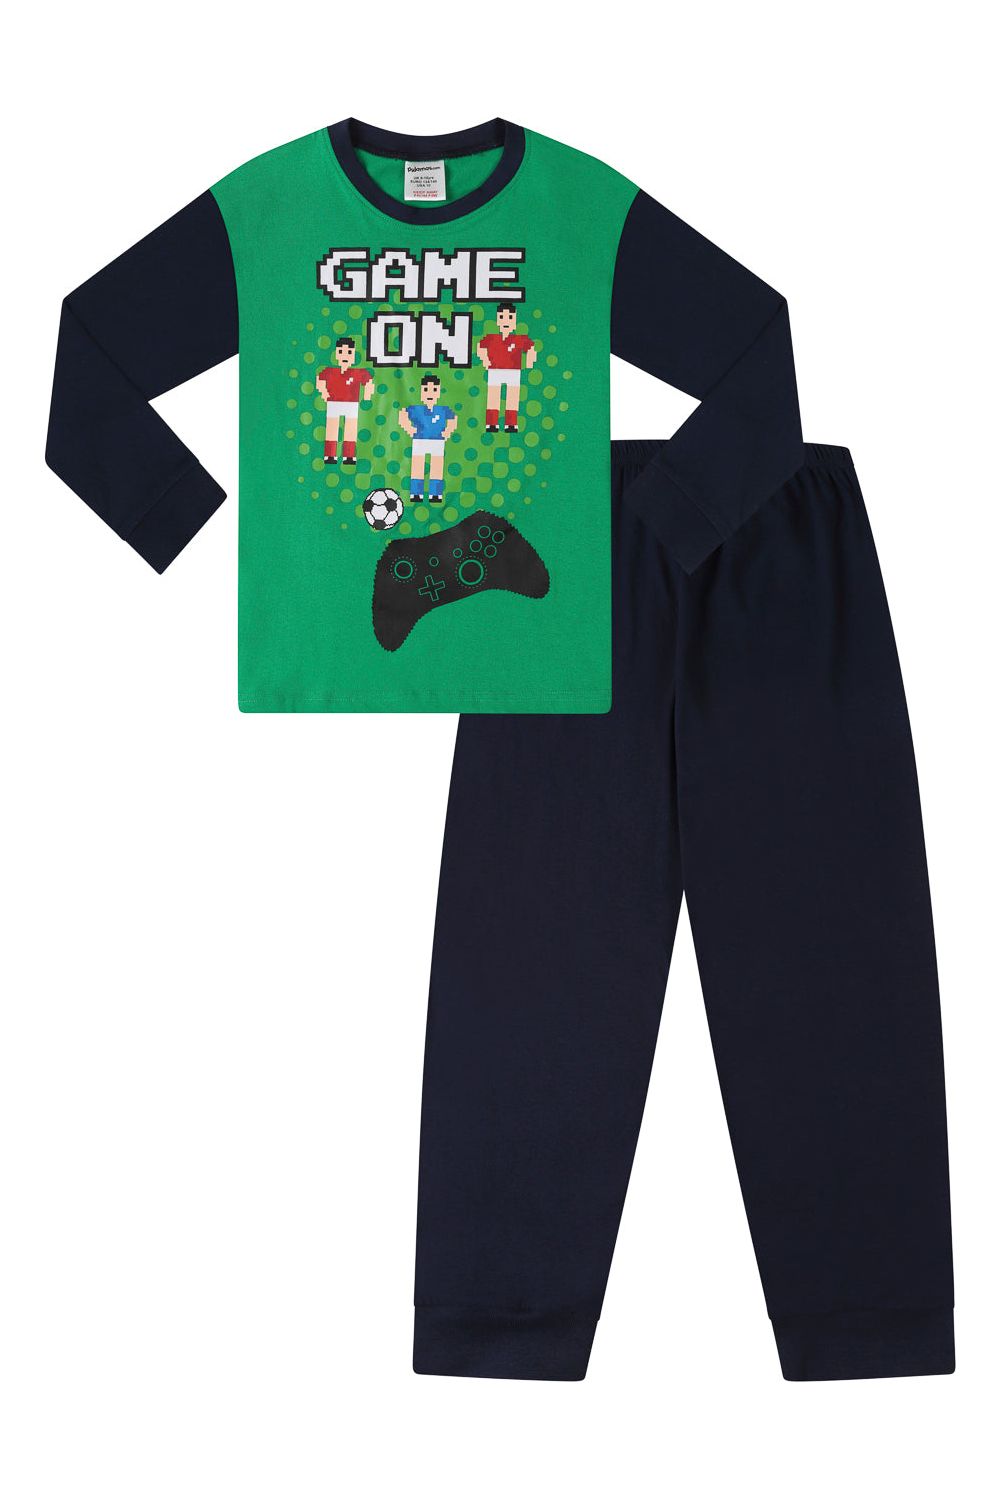 Boys Retro Game on Football Long Pyjamas - Pyjamas.com